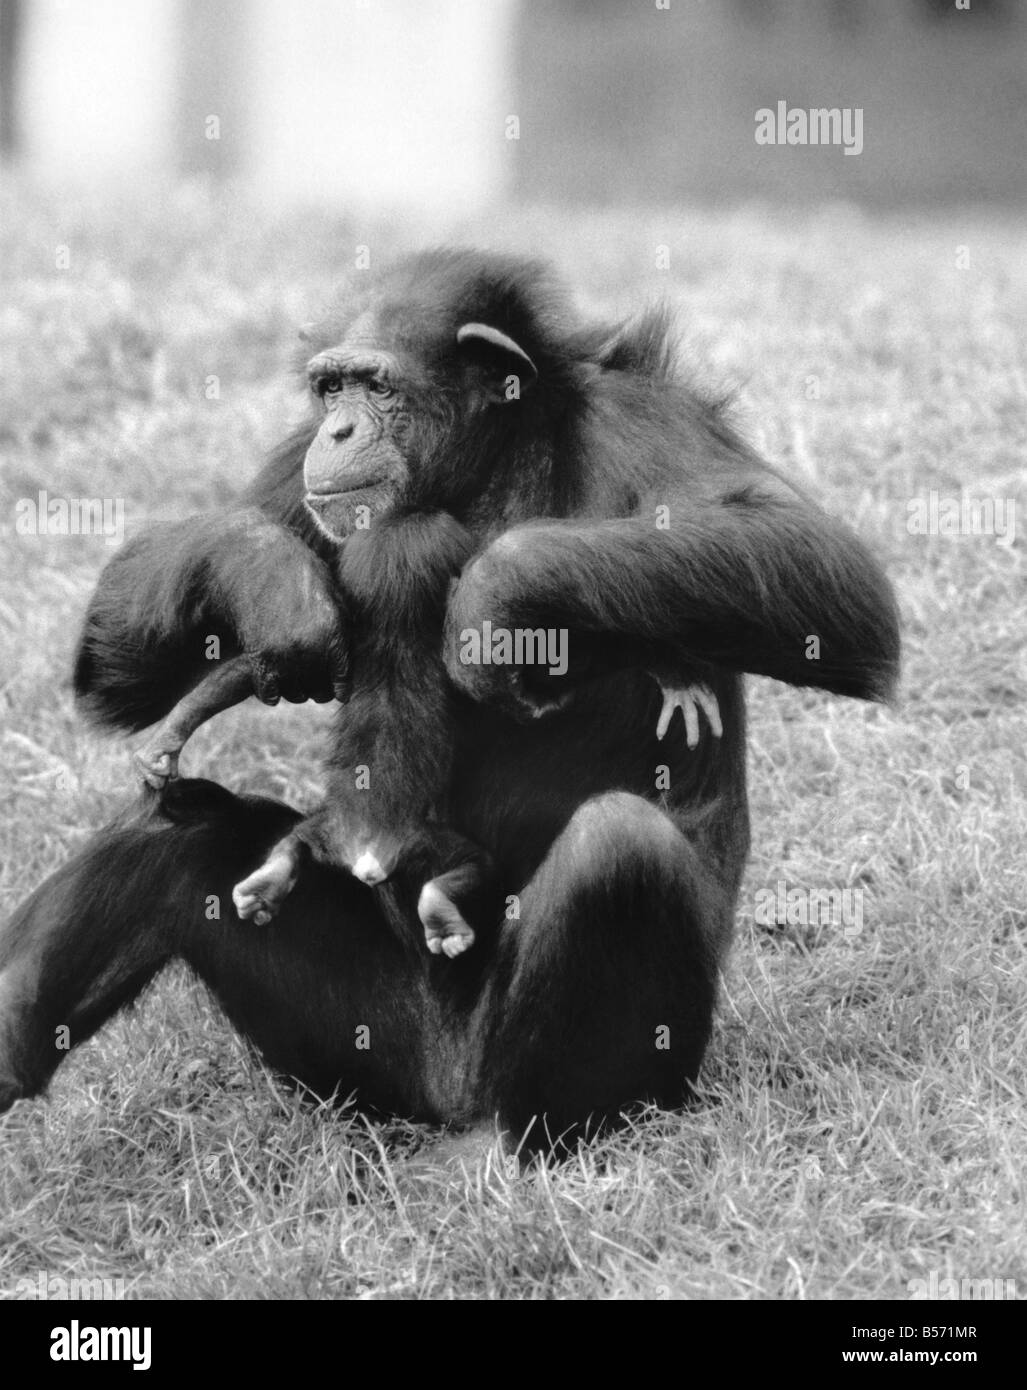 Die Woche bekam alten Schimpansen Benson ganz hatte nicht den Dreh Spanferkel bis zu Mama Rosie, so es ein wenig Ermutigung dauerte, um ihn zu füttern. Rosie, die Mutter war Handreared durch ihre Hüter von Geburt, so war es viel wichtiger, Benson Fütterung gut zu bekommen. Mit Benson gibt es nun vier Generationen von Schimpansen im Zoo von Chester. Rosie hatte ein weiteres Baby Schimpanse Botham letztes Jahr Verstorbenen nach 3 Monaten, so dass sie ganz besonderen Pflege Benson stattfindet. November 1986 P004094 Stockfoto